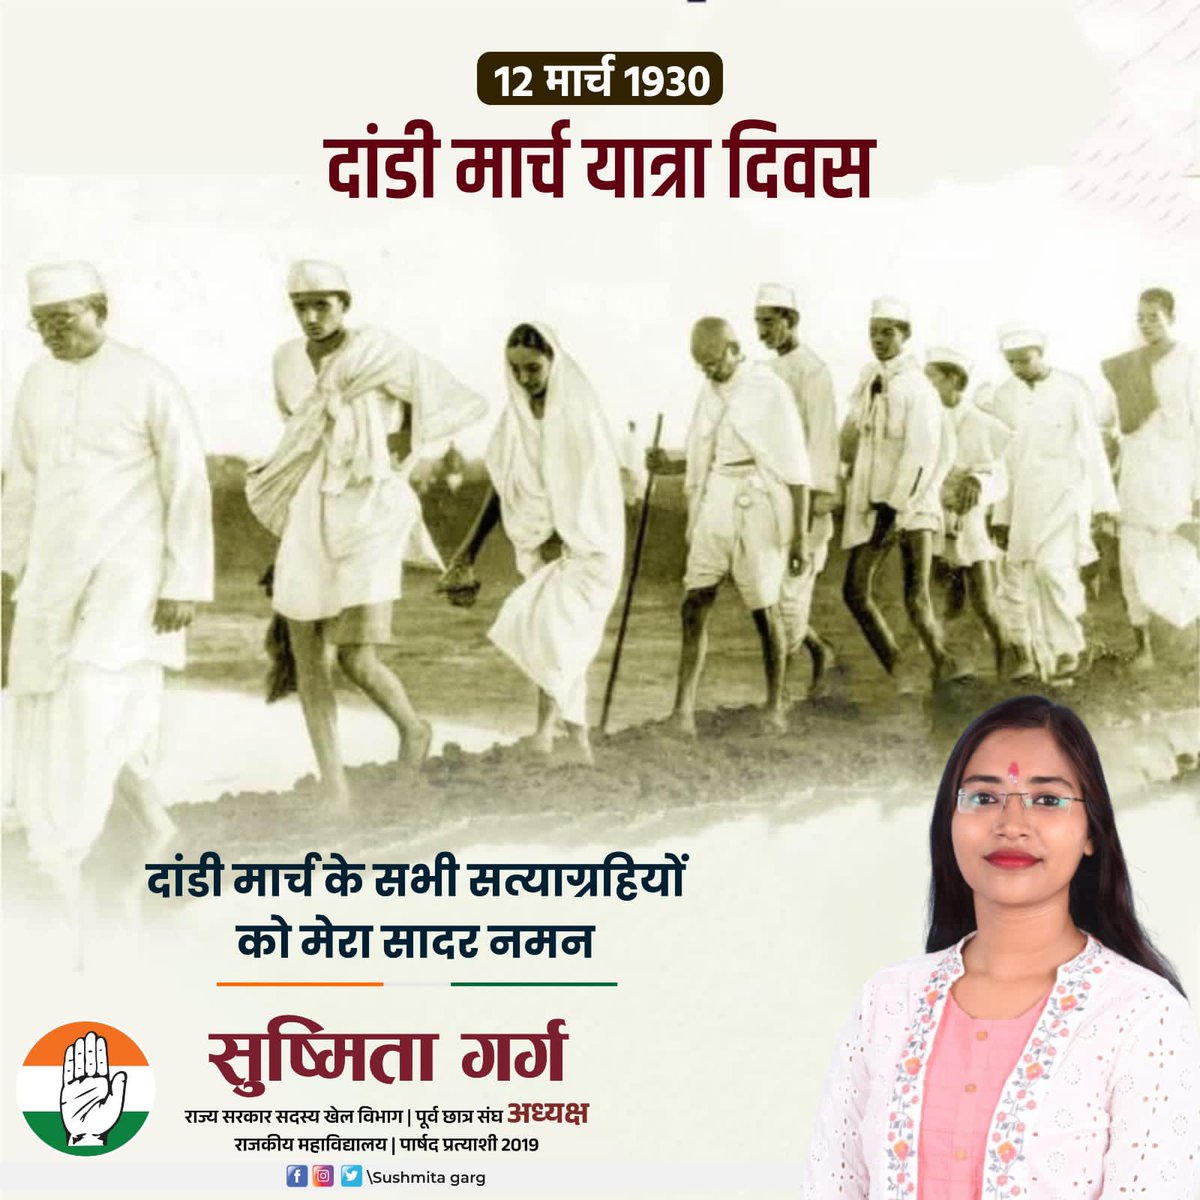 12 मार्च, 1930 दांडी मार्च सत्याग्रहियों को सादर नमन।

आज ही के दिन महात्मा गांधी जी ने नमक कानून को तोड़कर अंग्रेजों के नमक उत्पादन पर एकाधिकार को समाप्त किया था और अपना अधिकार दिलवाने हेतु दांडी मार्च किया गया था।

#dandimarchyatra #MahatmaGandhi 
@SushmitaJalore